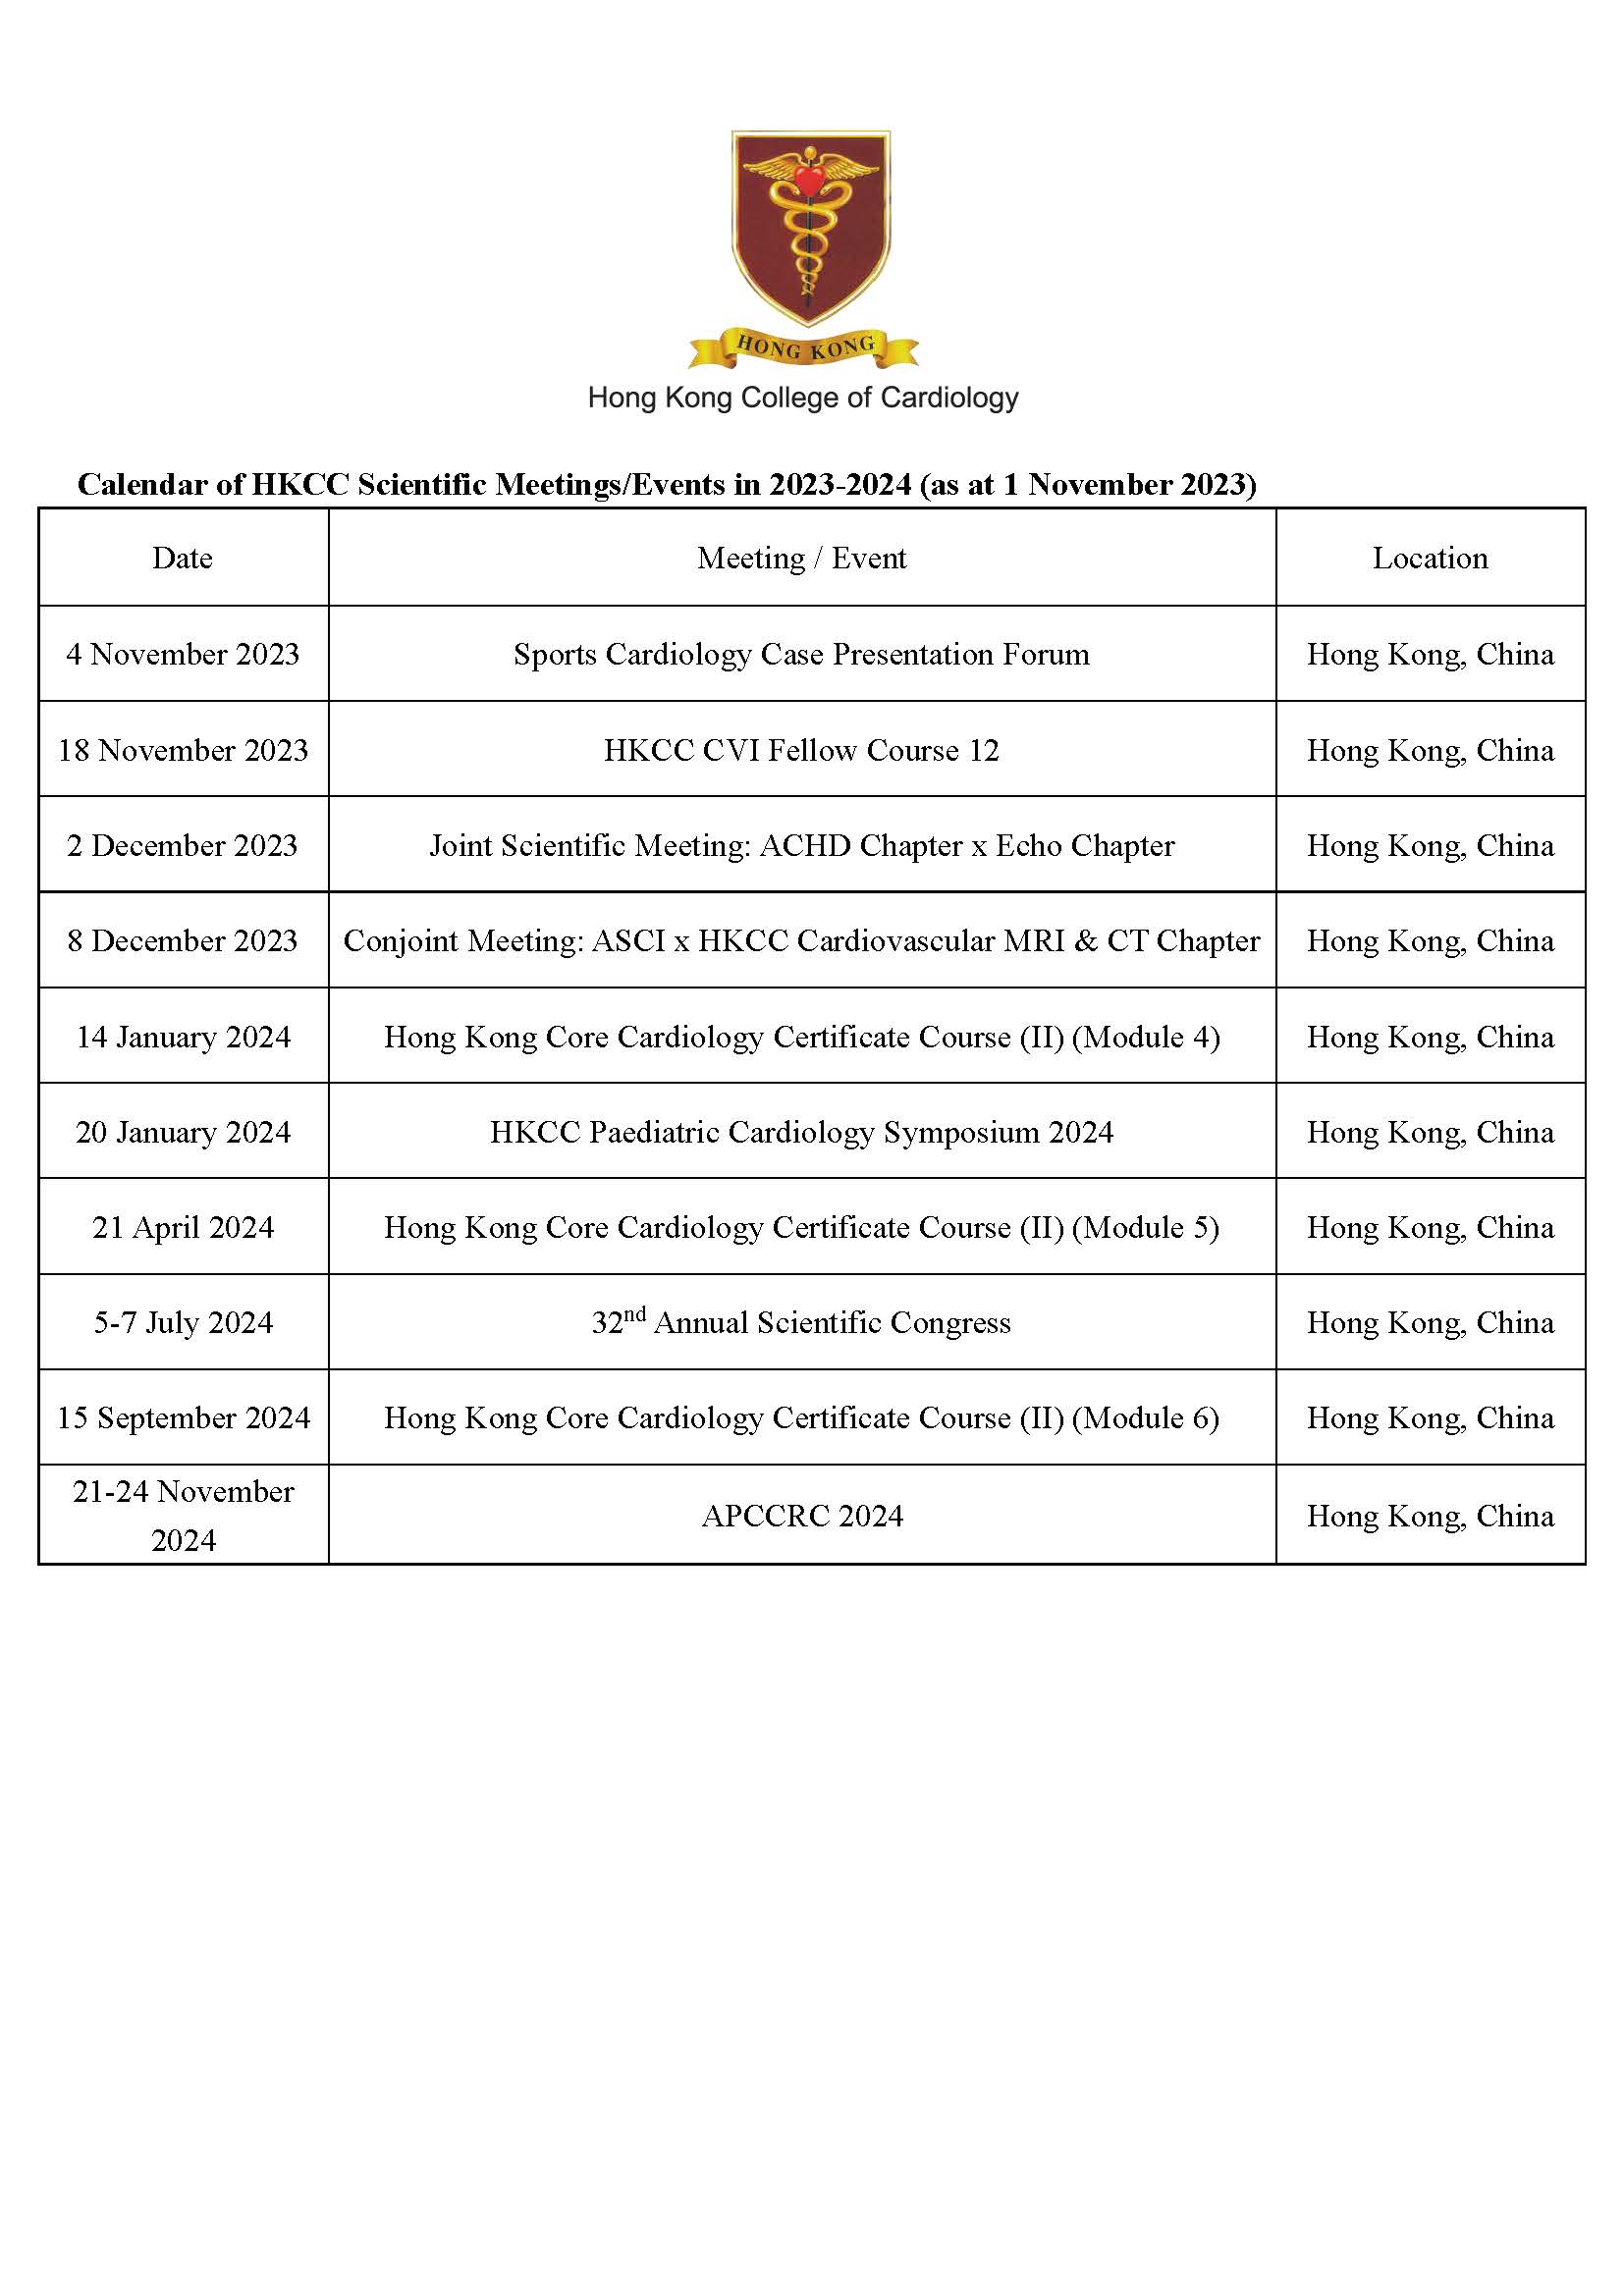 Calendar of HKCC Scientific Meetings / Events in 2023 (as at 22 Sep 2023)